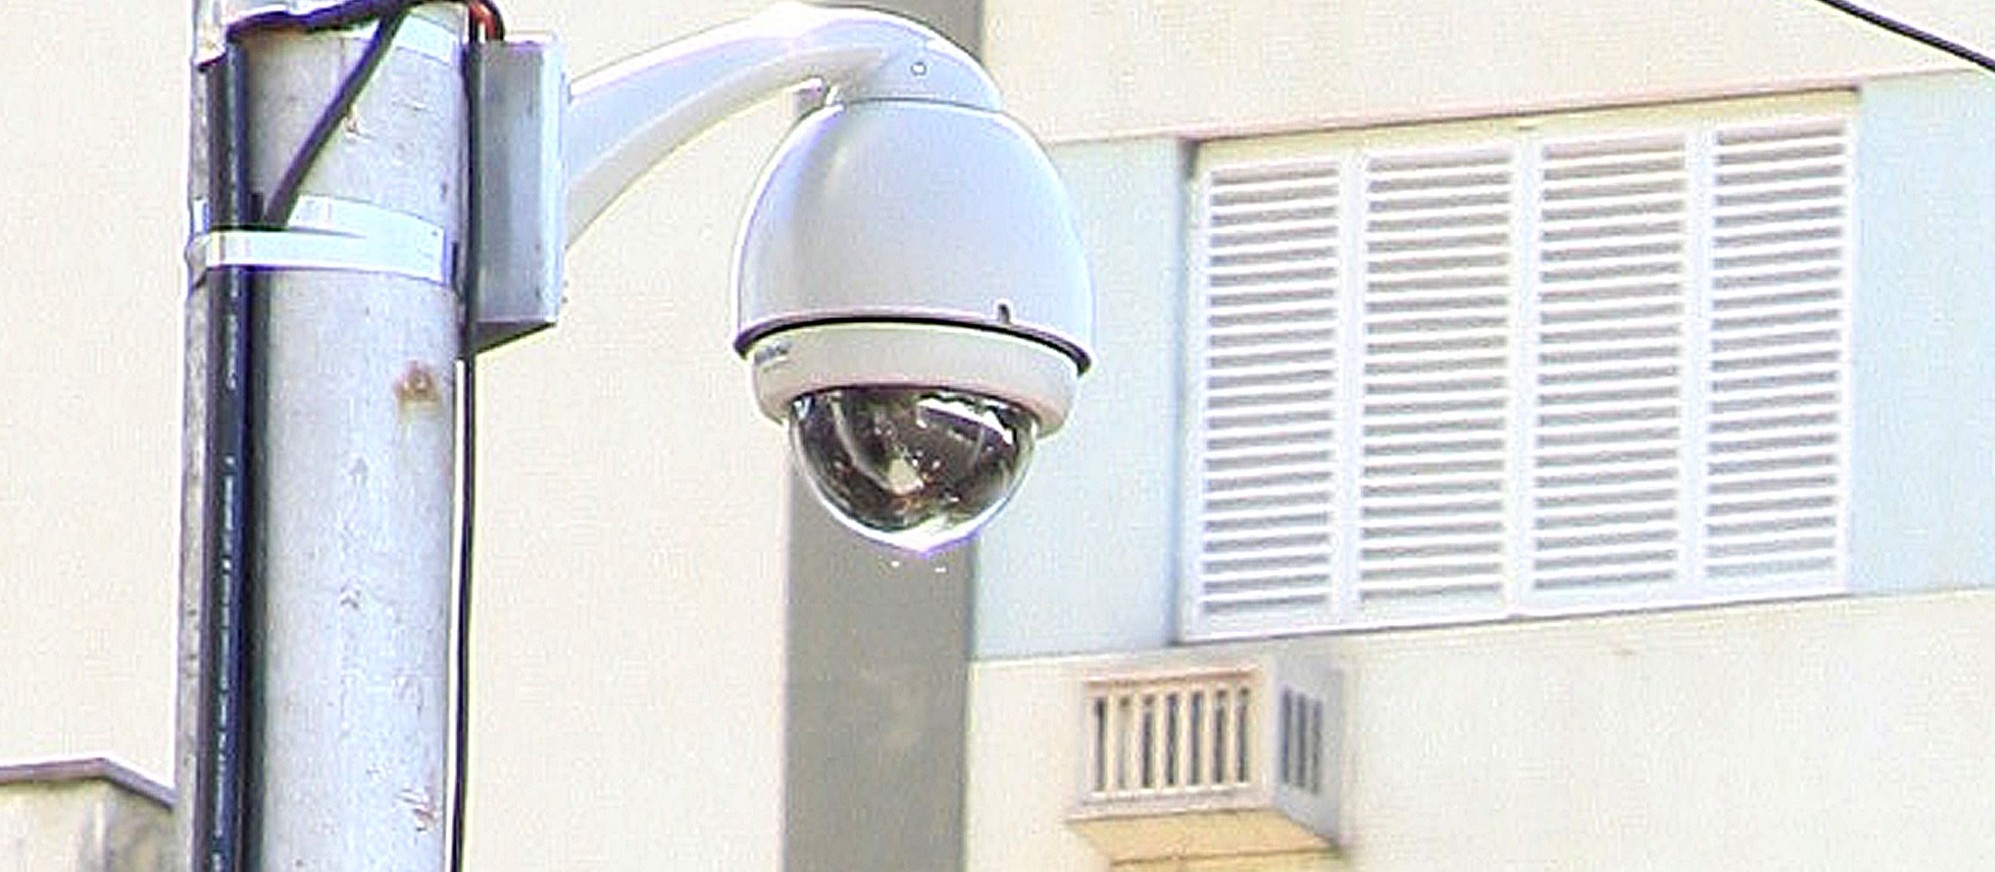 Supercâmeras voltam a funcionar em agosto, diz prefeitura